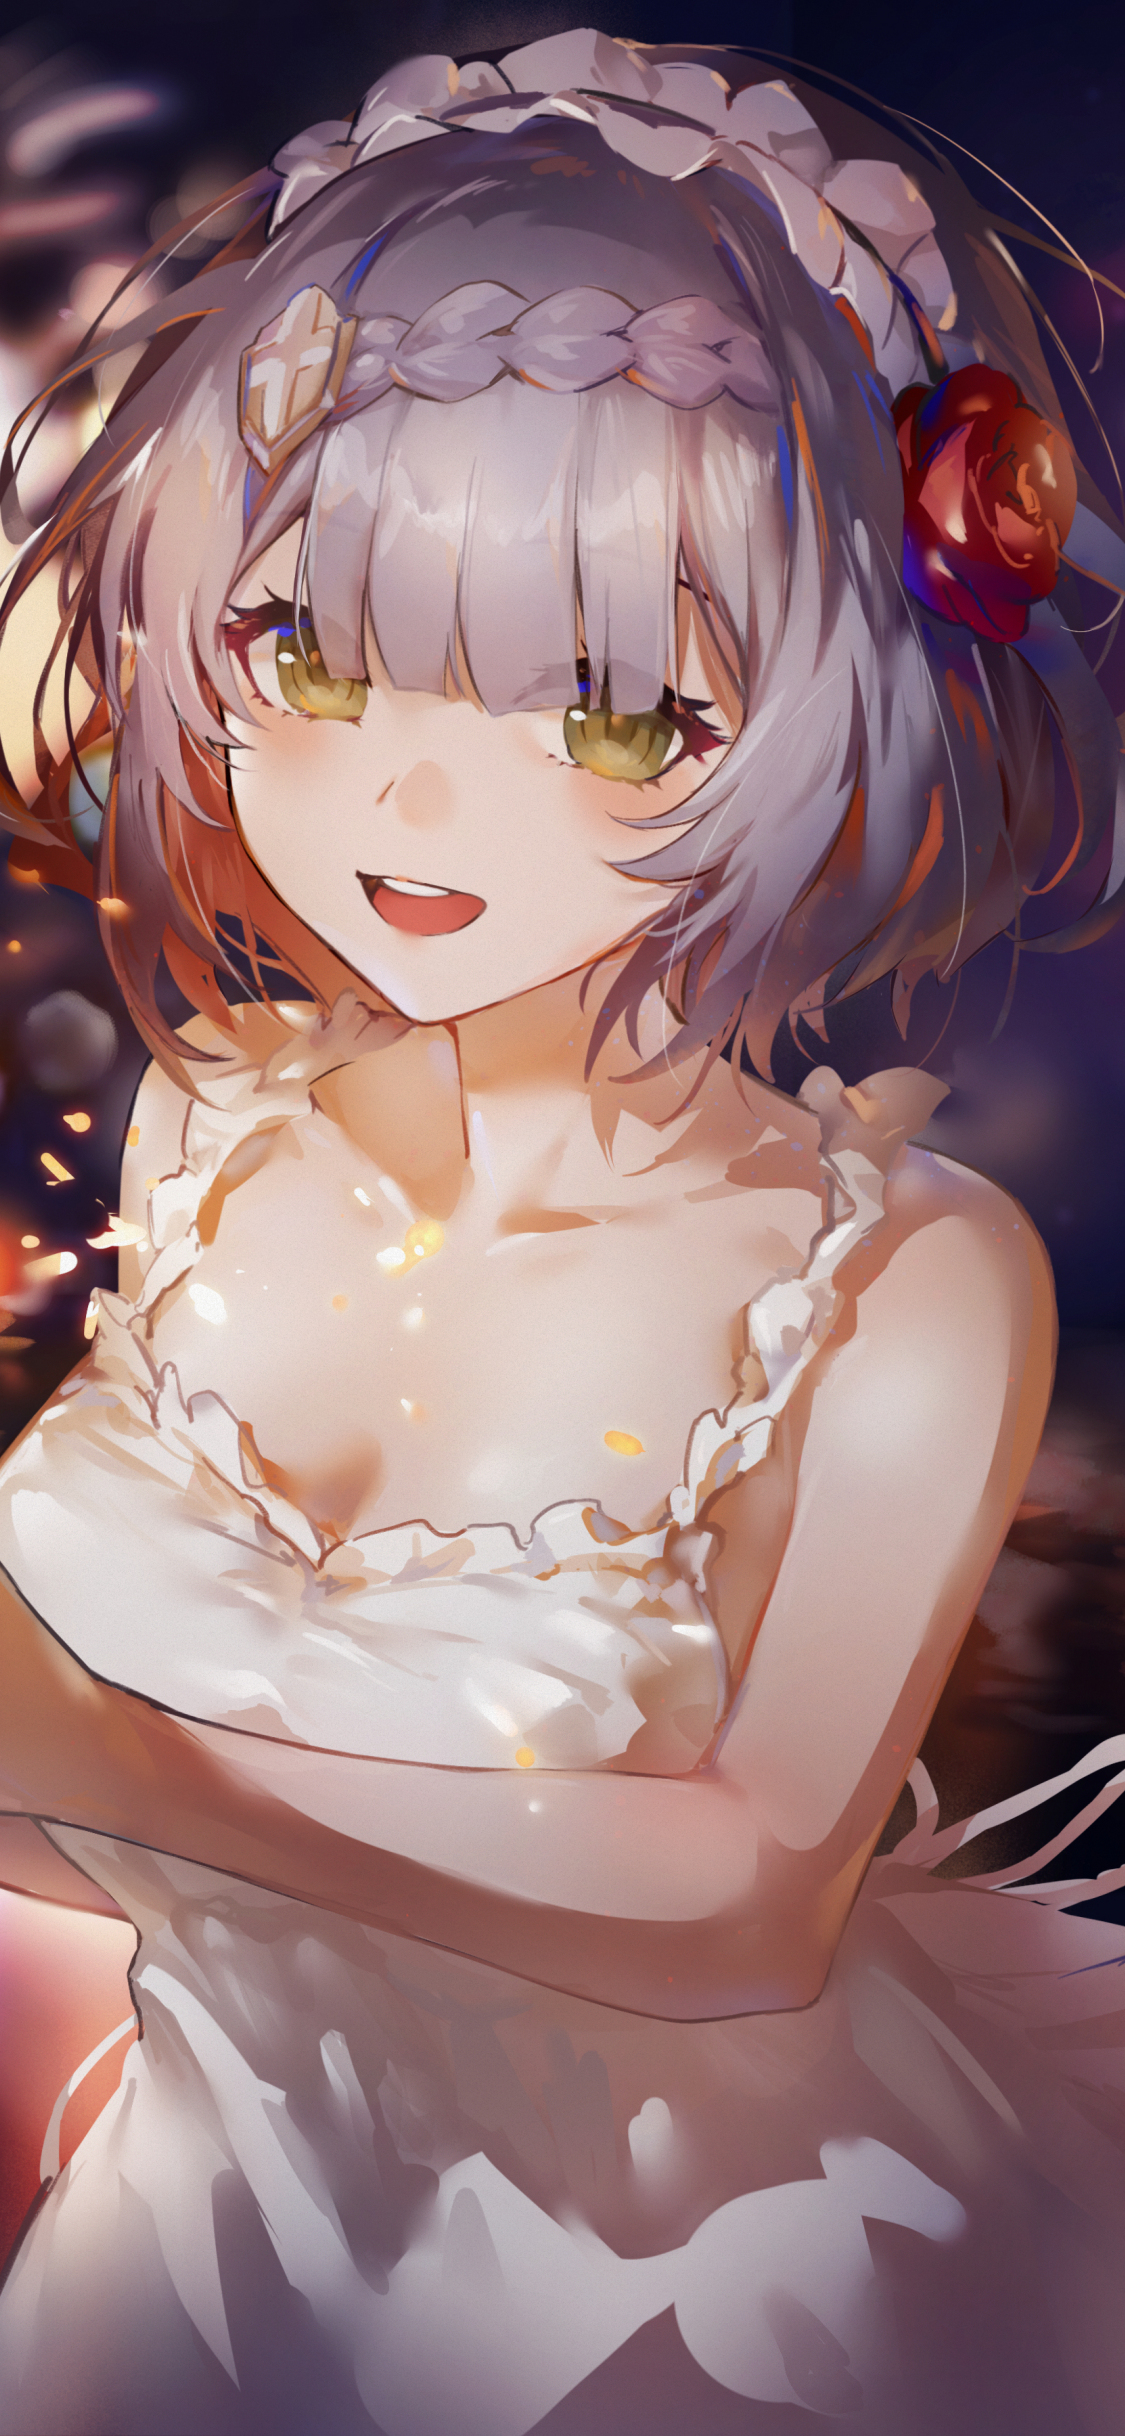 White dress, cute anime girl, art, 1125x2436 wallpaper